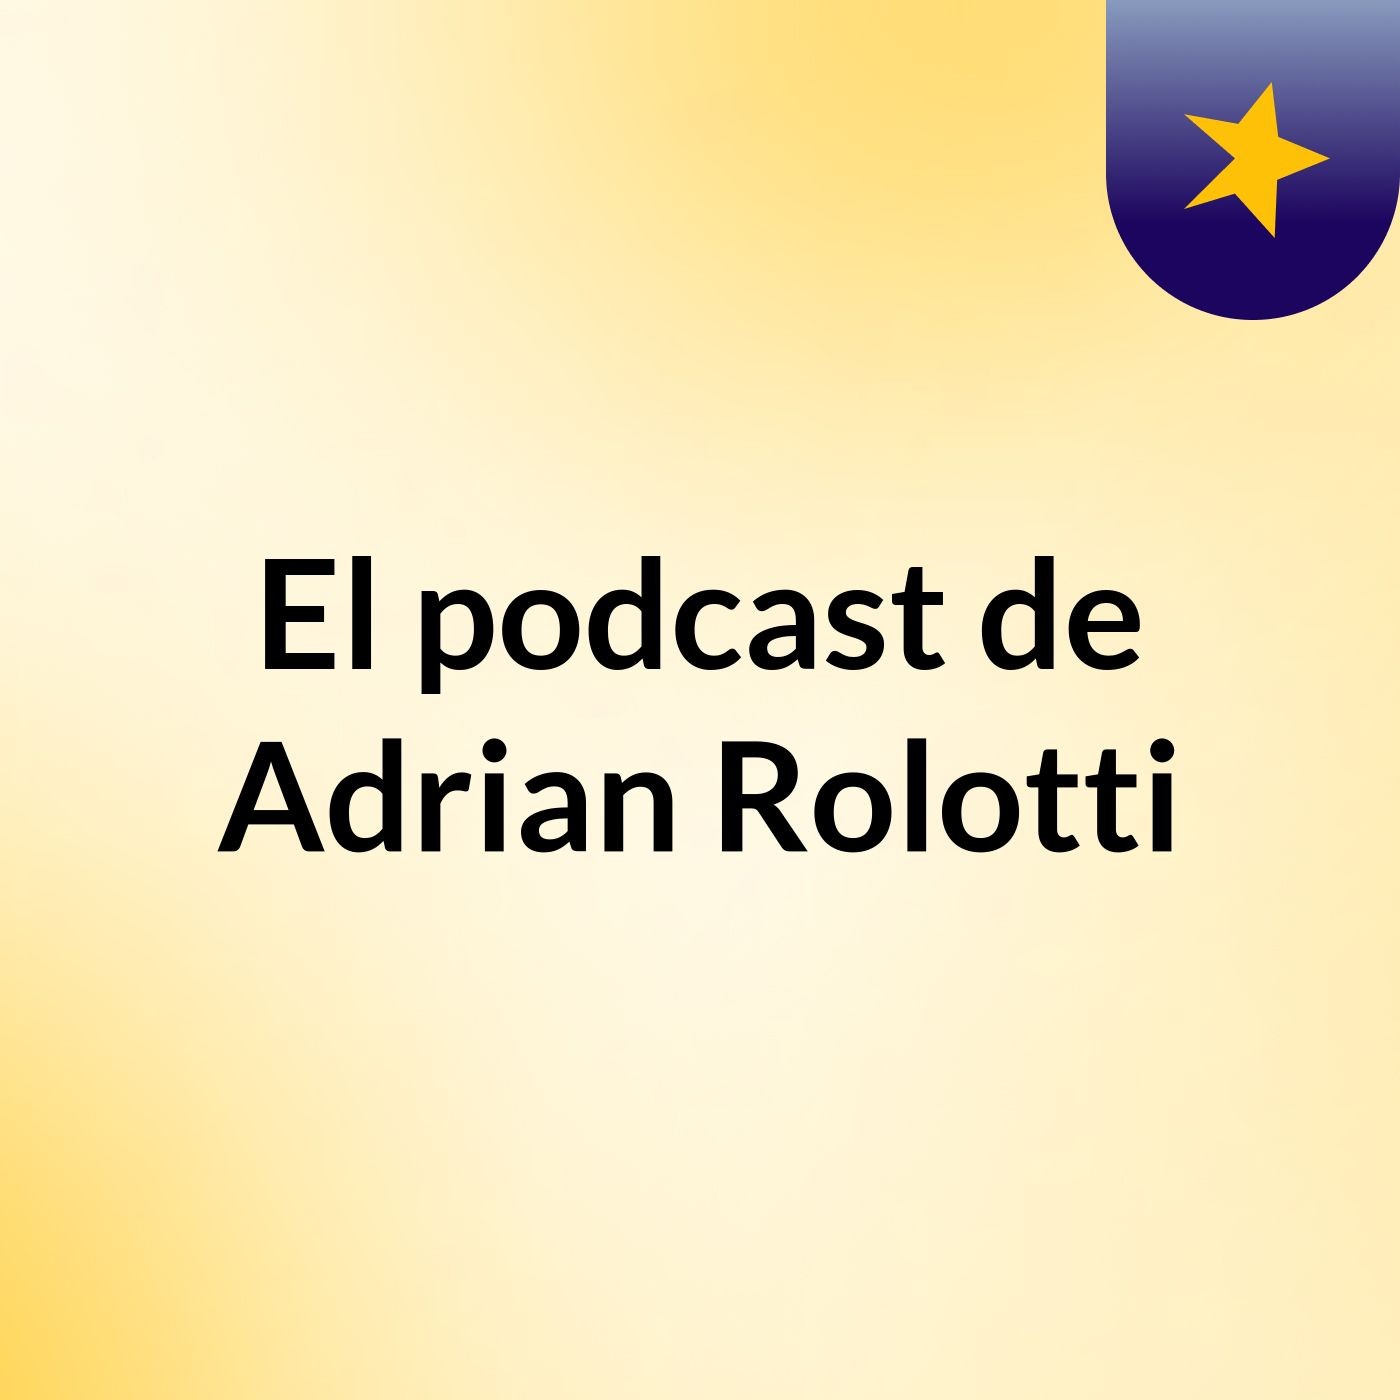 El podcast de Adrian Rolotti